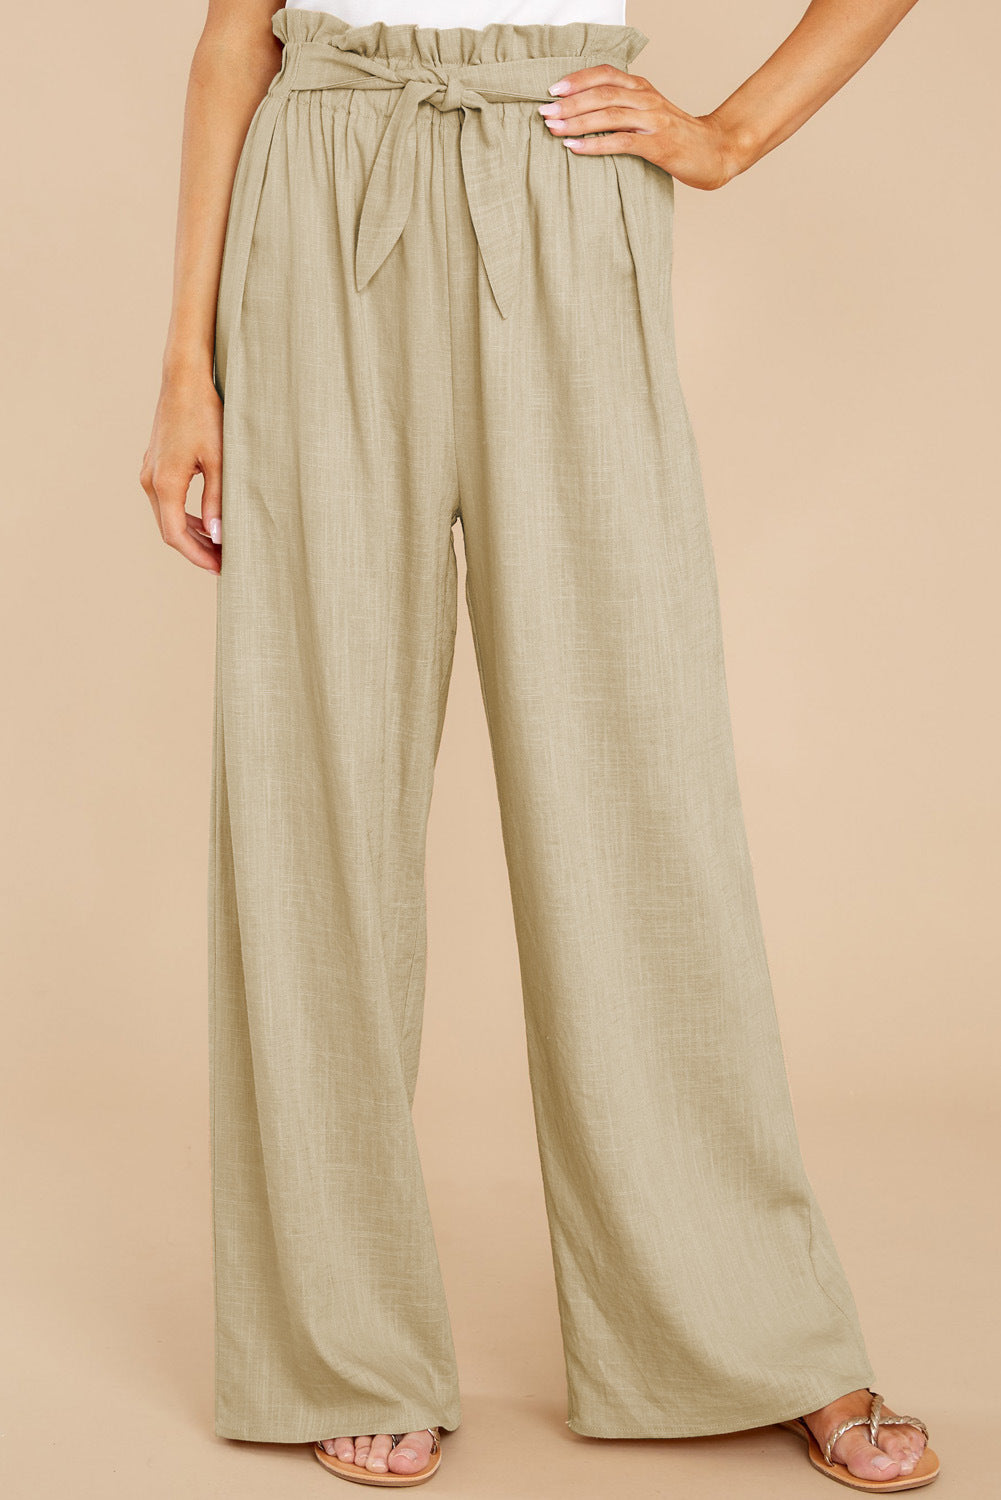 Unique Women's Loose Cotton Linen Casual Pants